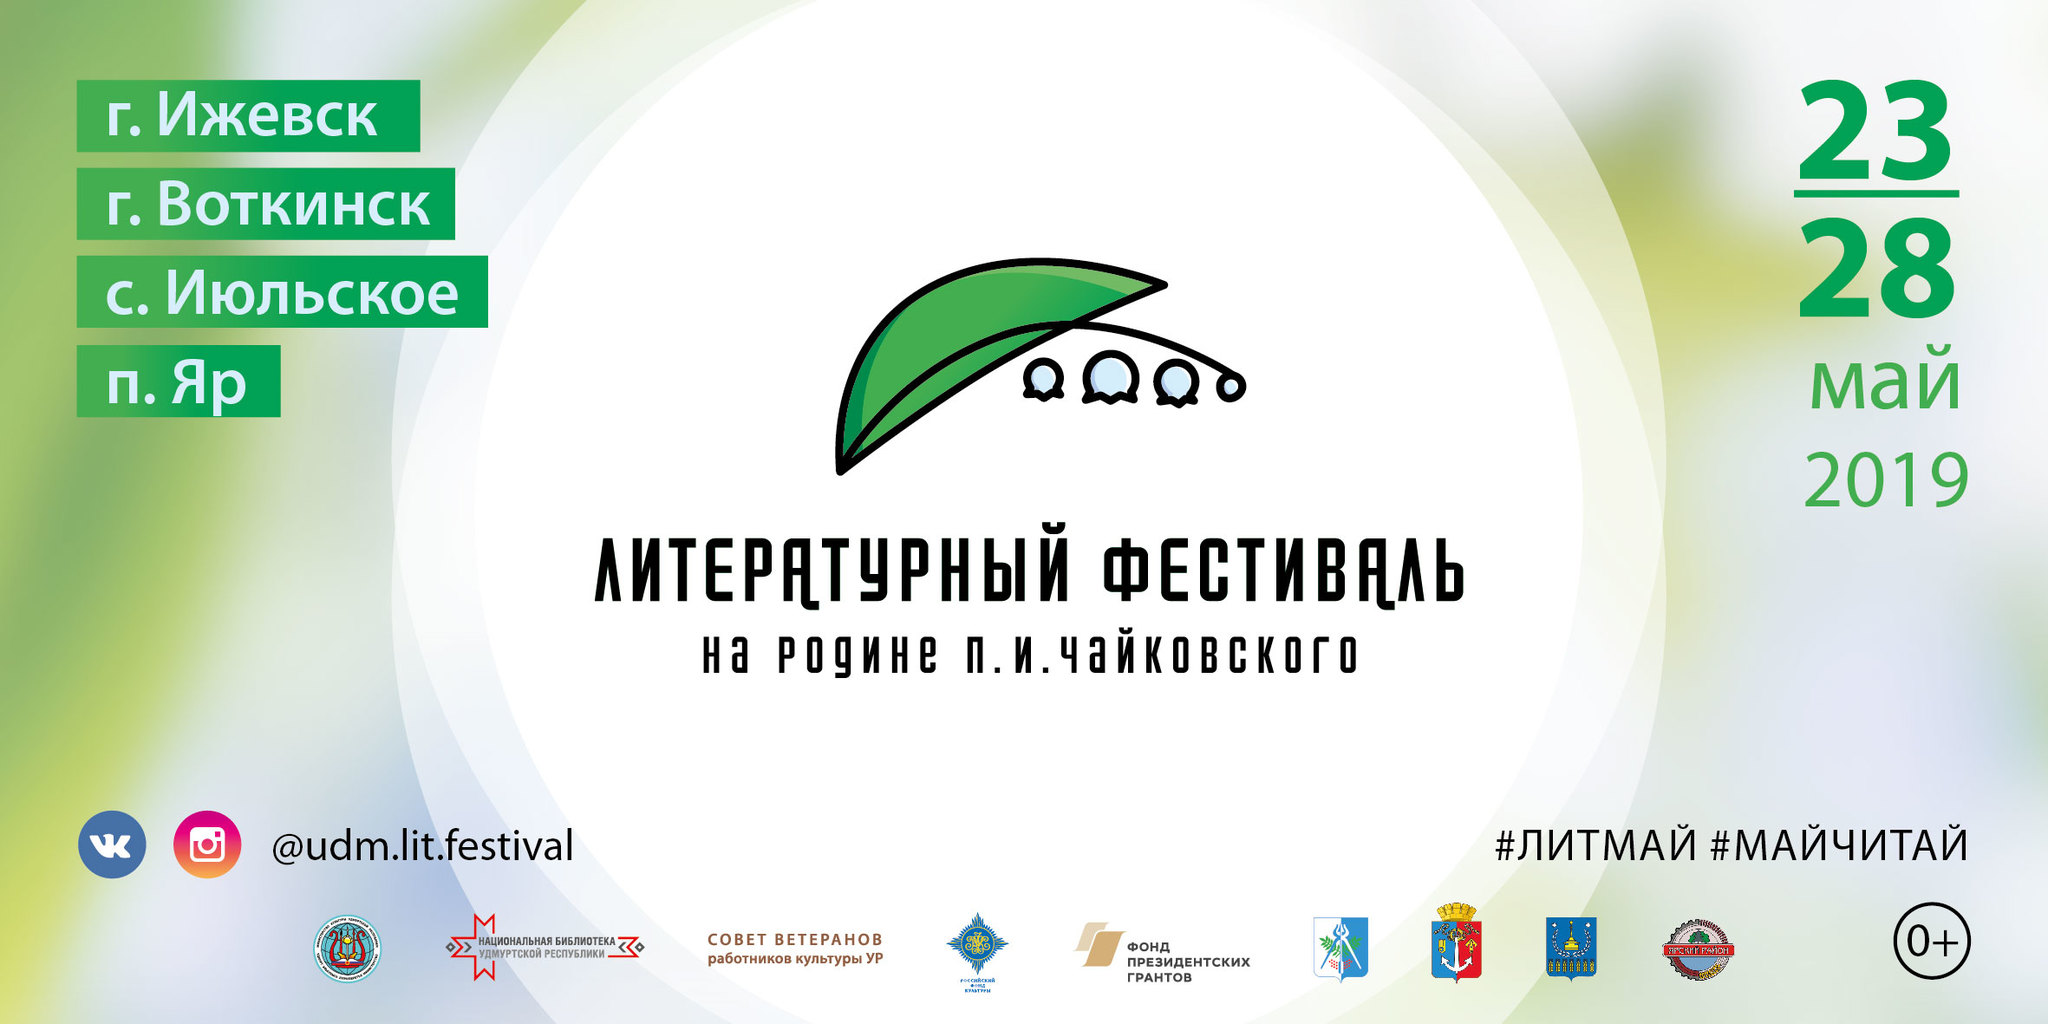 Афиша Ижевска — Литературный фестиваль на родине Чайковского